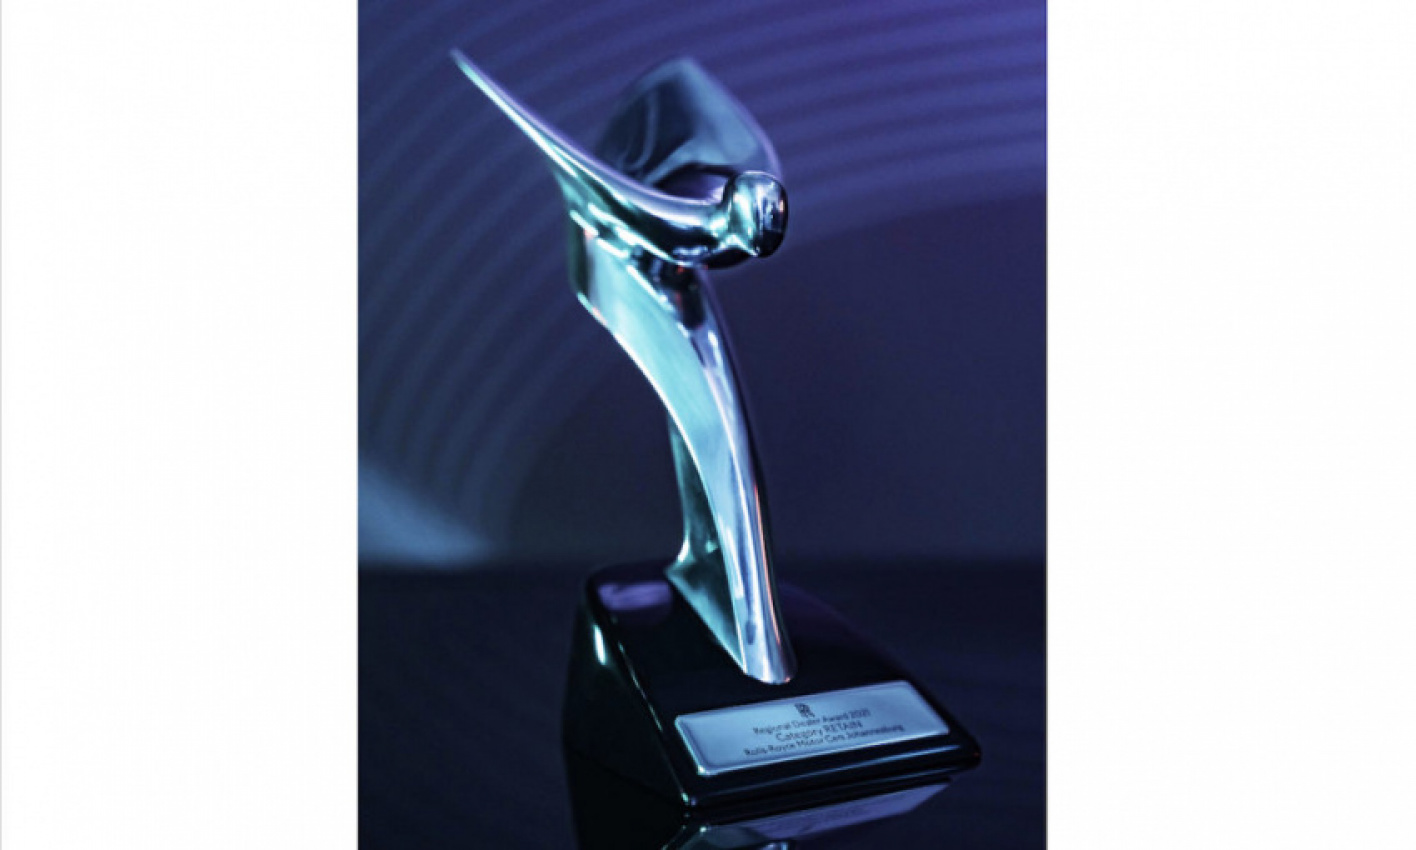 all news, autos, cars, rolls-royce, awards, goodwood, rr, spectre, rolls-royce motor cars johannesburg awarded second “retain” award